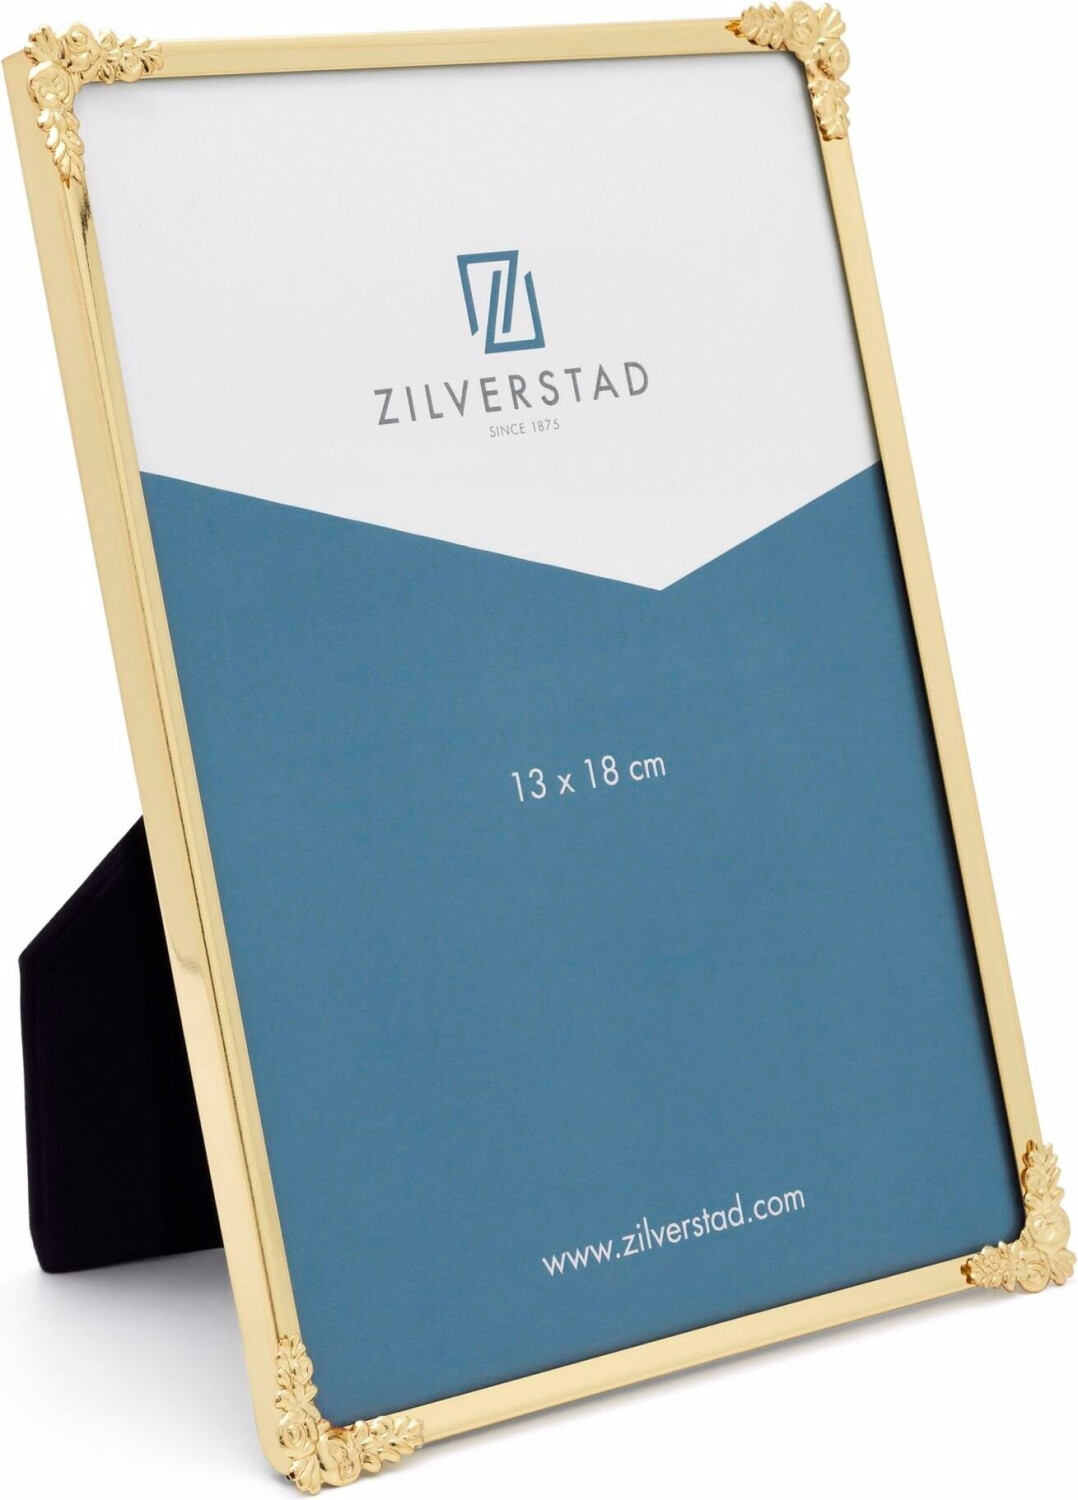 Photos - Photo Frame / Album Zilverstad Zilverstad Decora 10x15 Gold